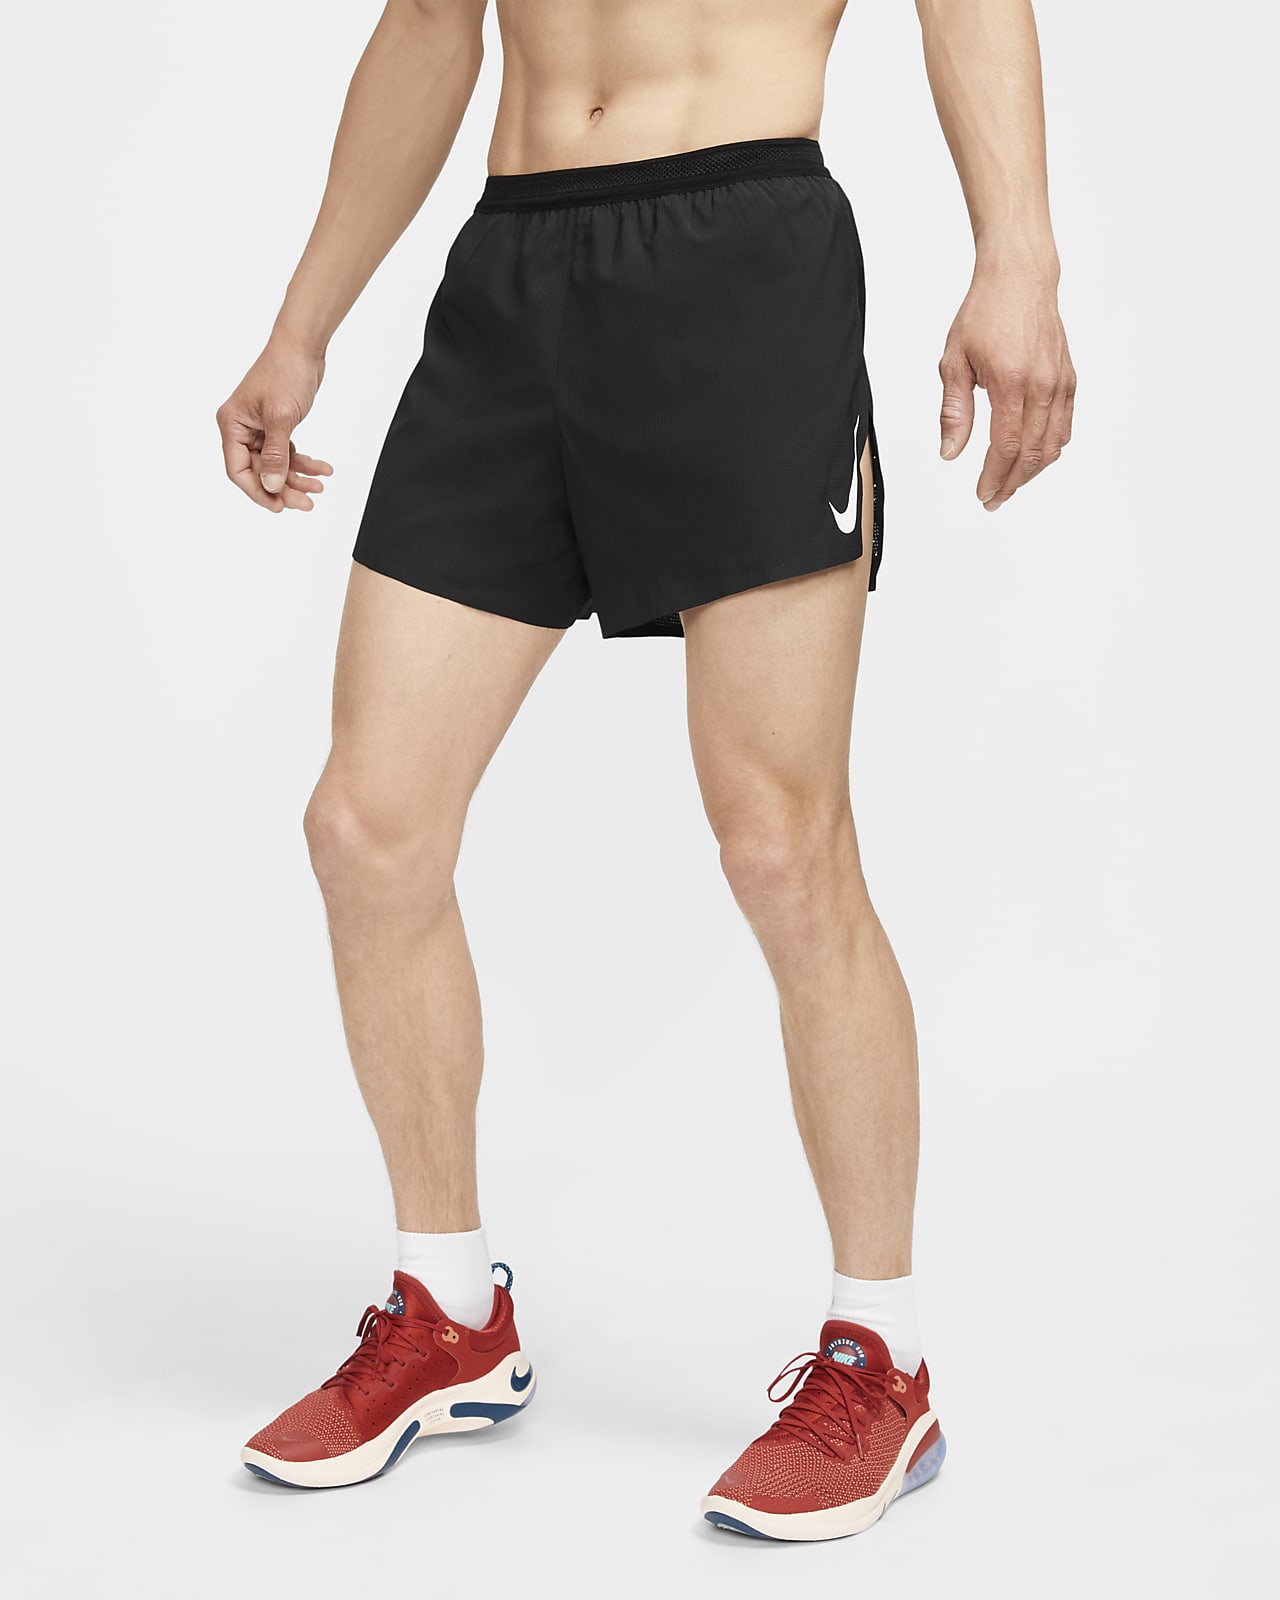 Nike Dri-FIT ADV AeroSwift 10 cm-es belső rövidnadrággal bélelt férfi versenyrövidnadrág